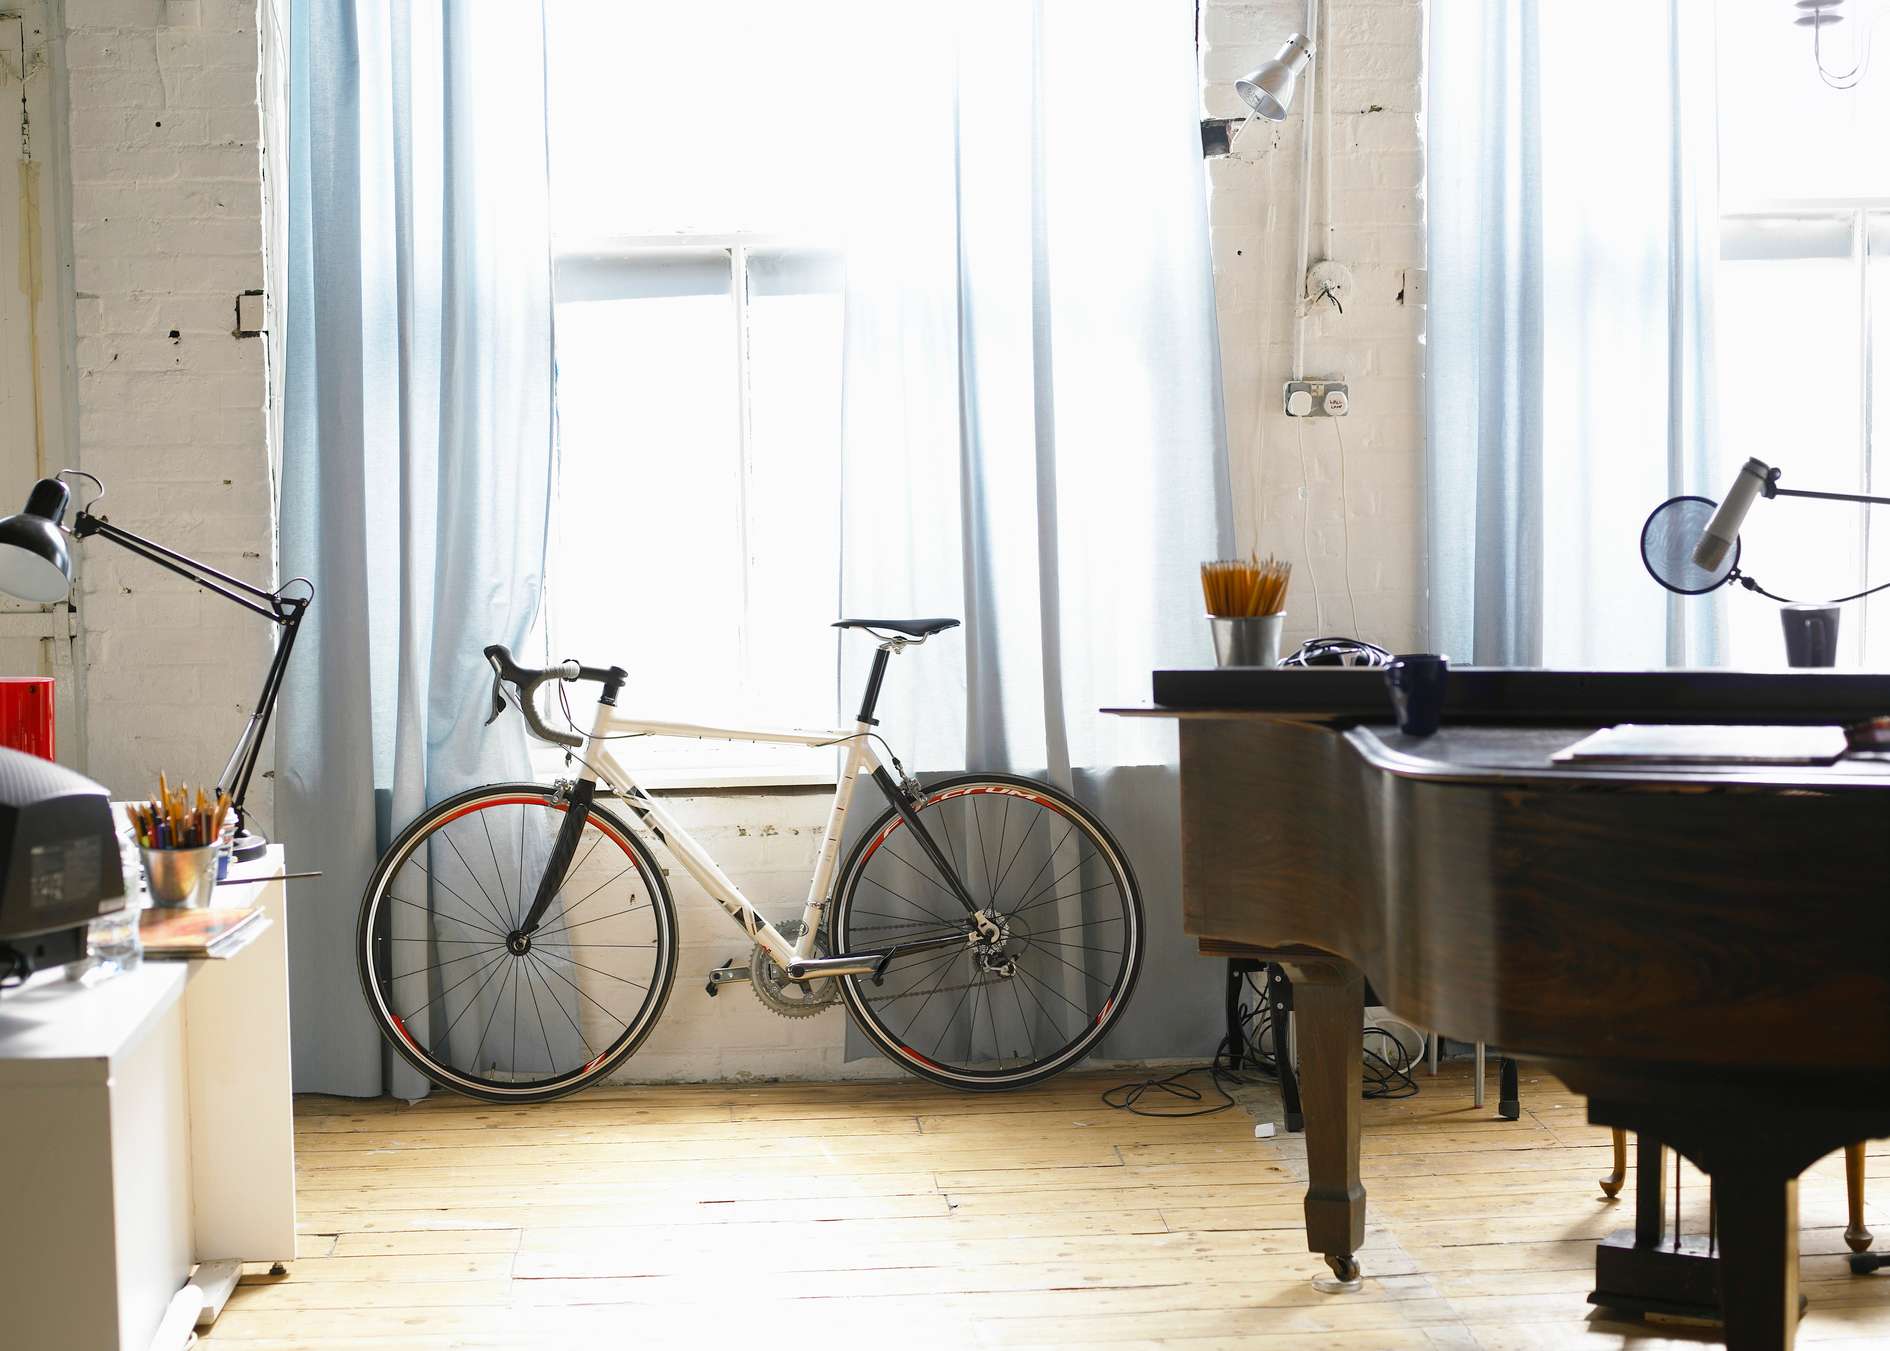 Innenraum einer Wohnung mit Fahrrad, Klavier und Schreibtisch